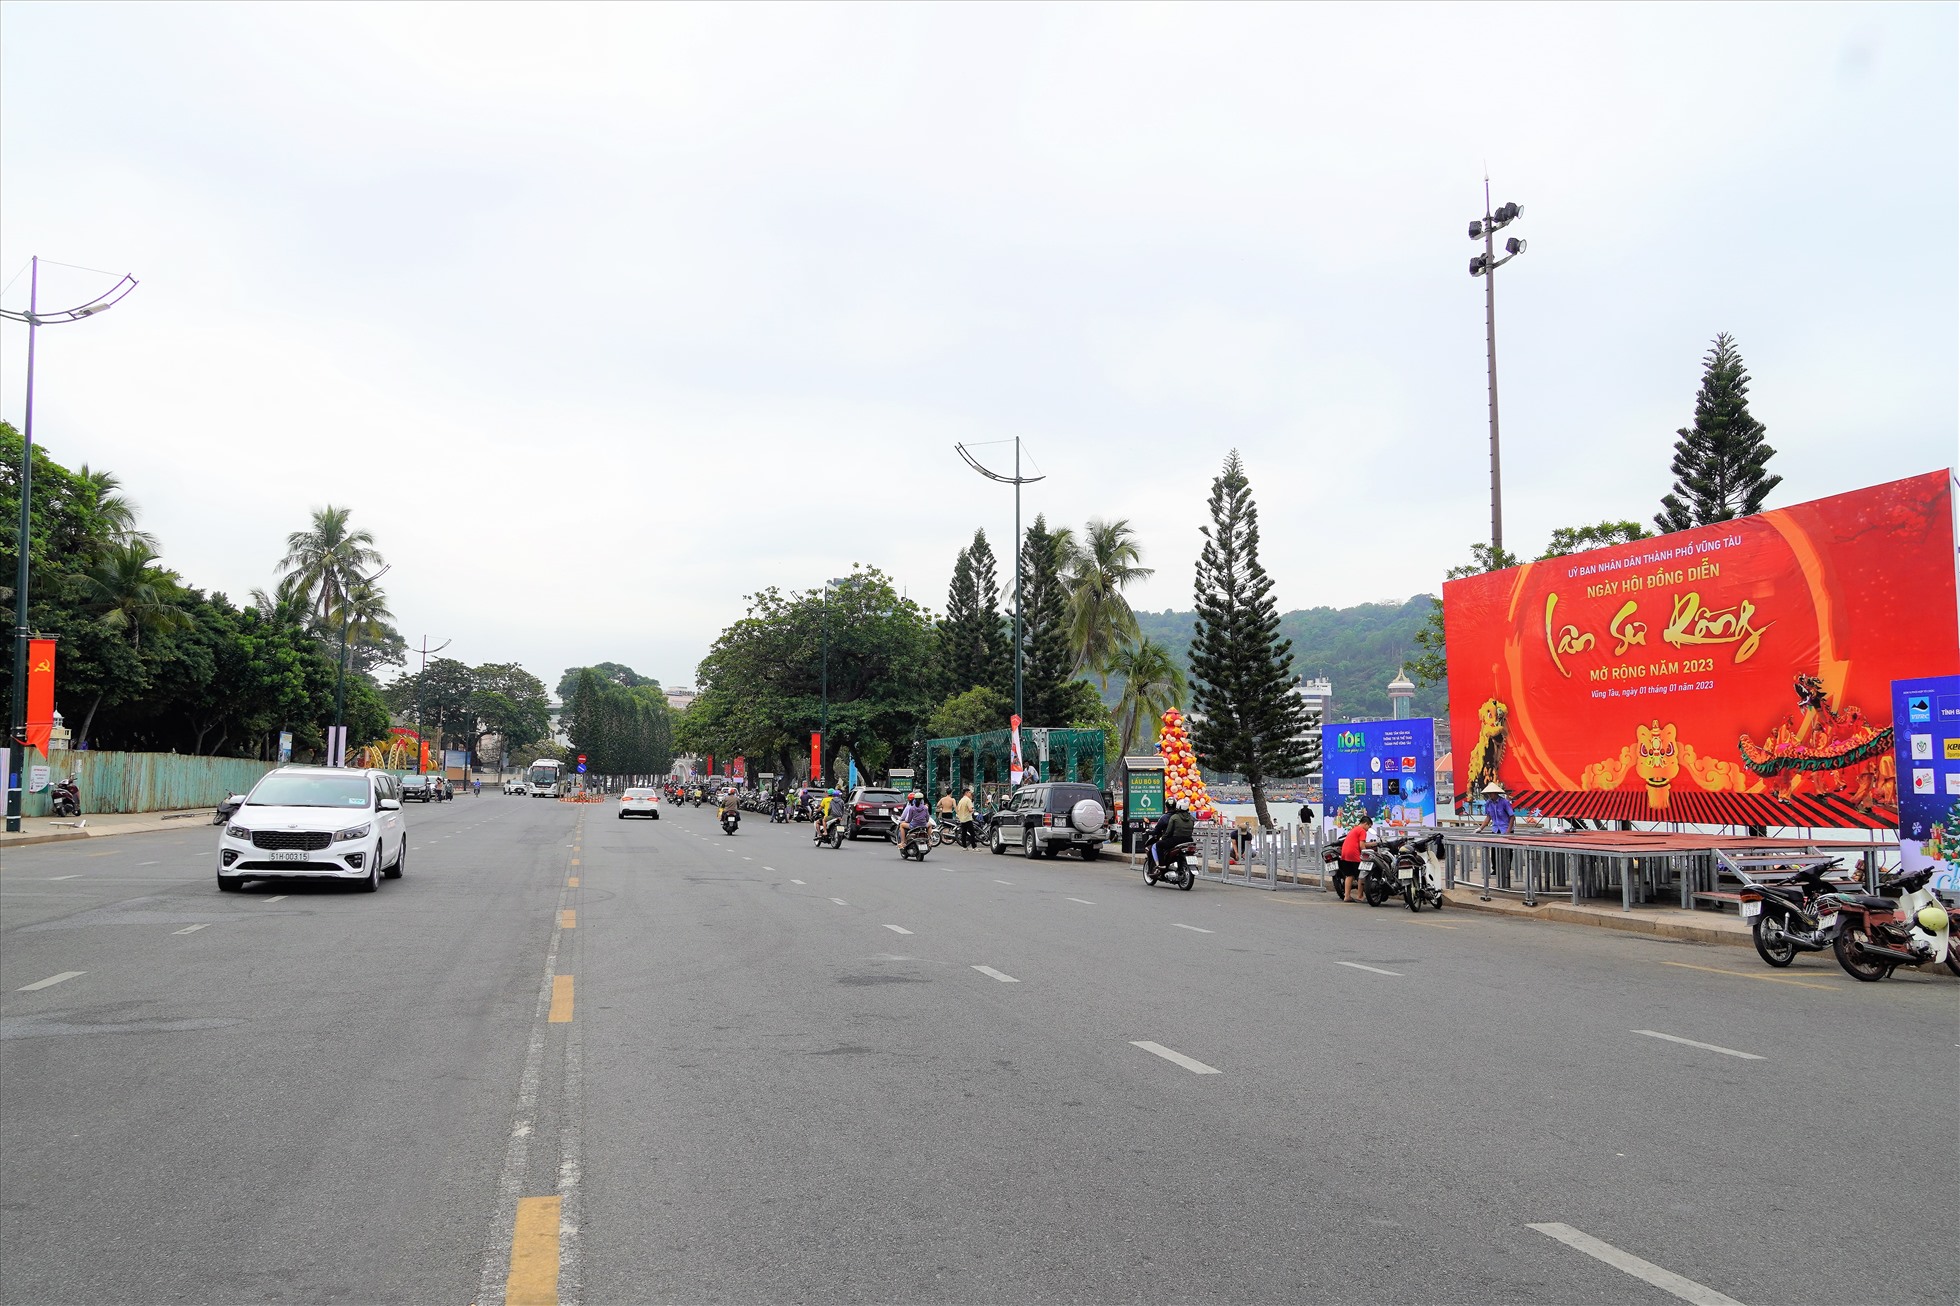 Cung đường Bãi Trước TTP.Vũng Tàu (đoạn Quang Trung từ giao lộ Ba Cu đến giao lộ Lê Lợi) cũng sẽ bị chặn từ 8h đến 22h ngày 1.1.2023 để tổ chức sự kiện Lân - Sư - Rồng chào đón năm mới.